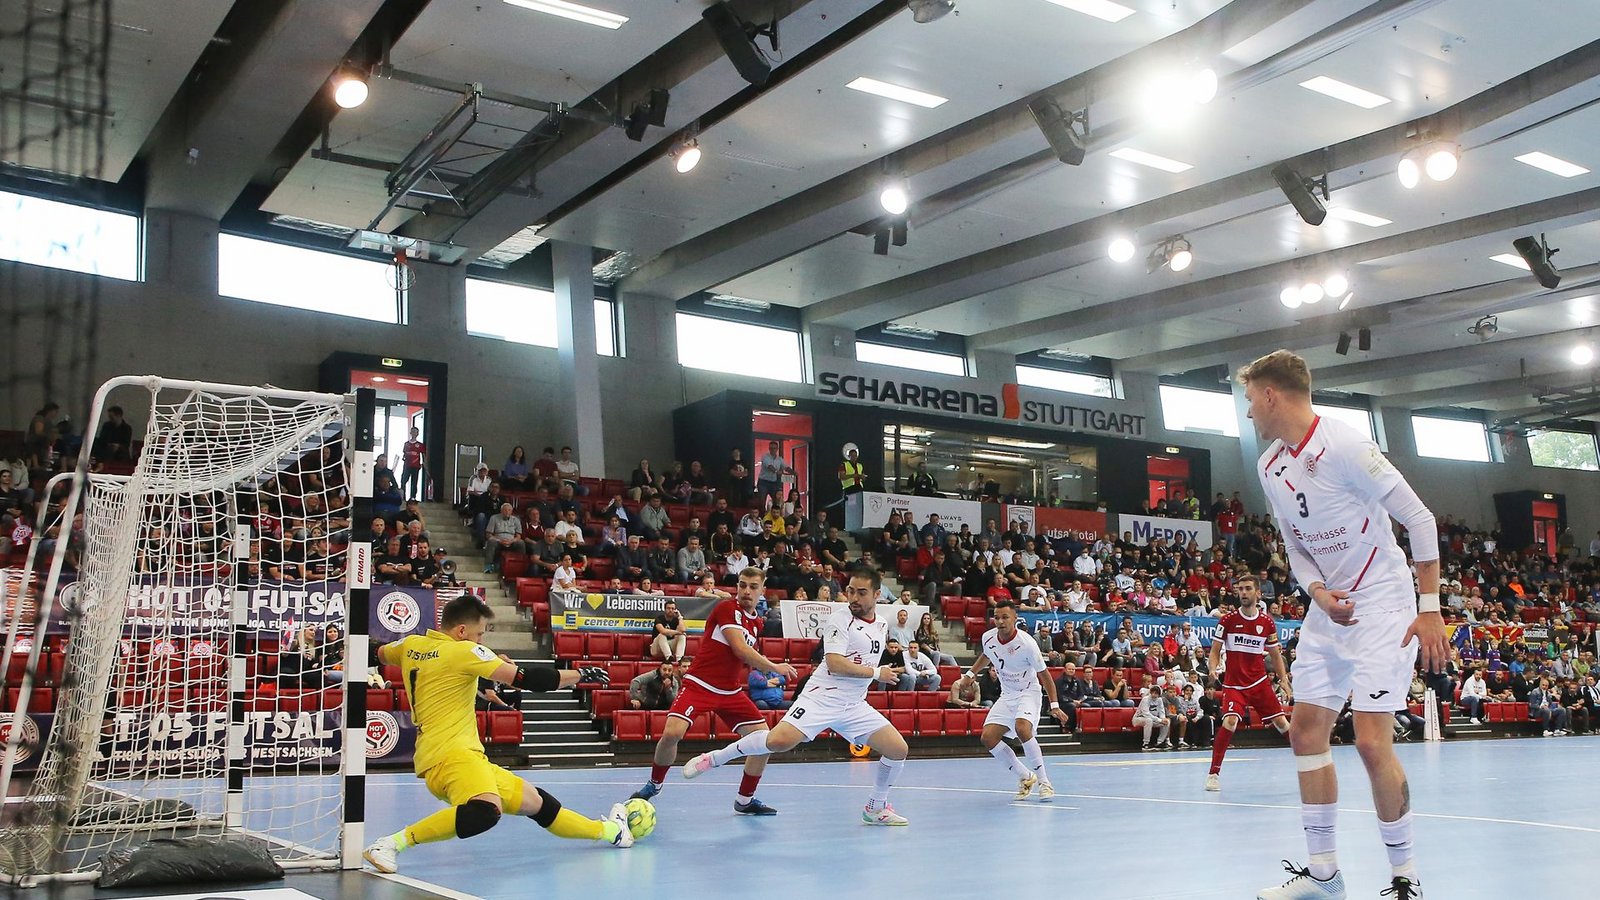 Bei großen Spielen wie dem Finale um die deutsche Meisterschaft gegen Hot 05 Futsal zeigt der 1. Stuttgarter Futsal Club sein Können in der Scharrena.Foto: Baumann/Julia Rahn